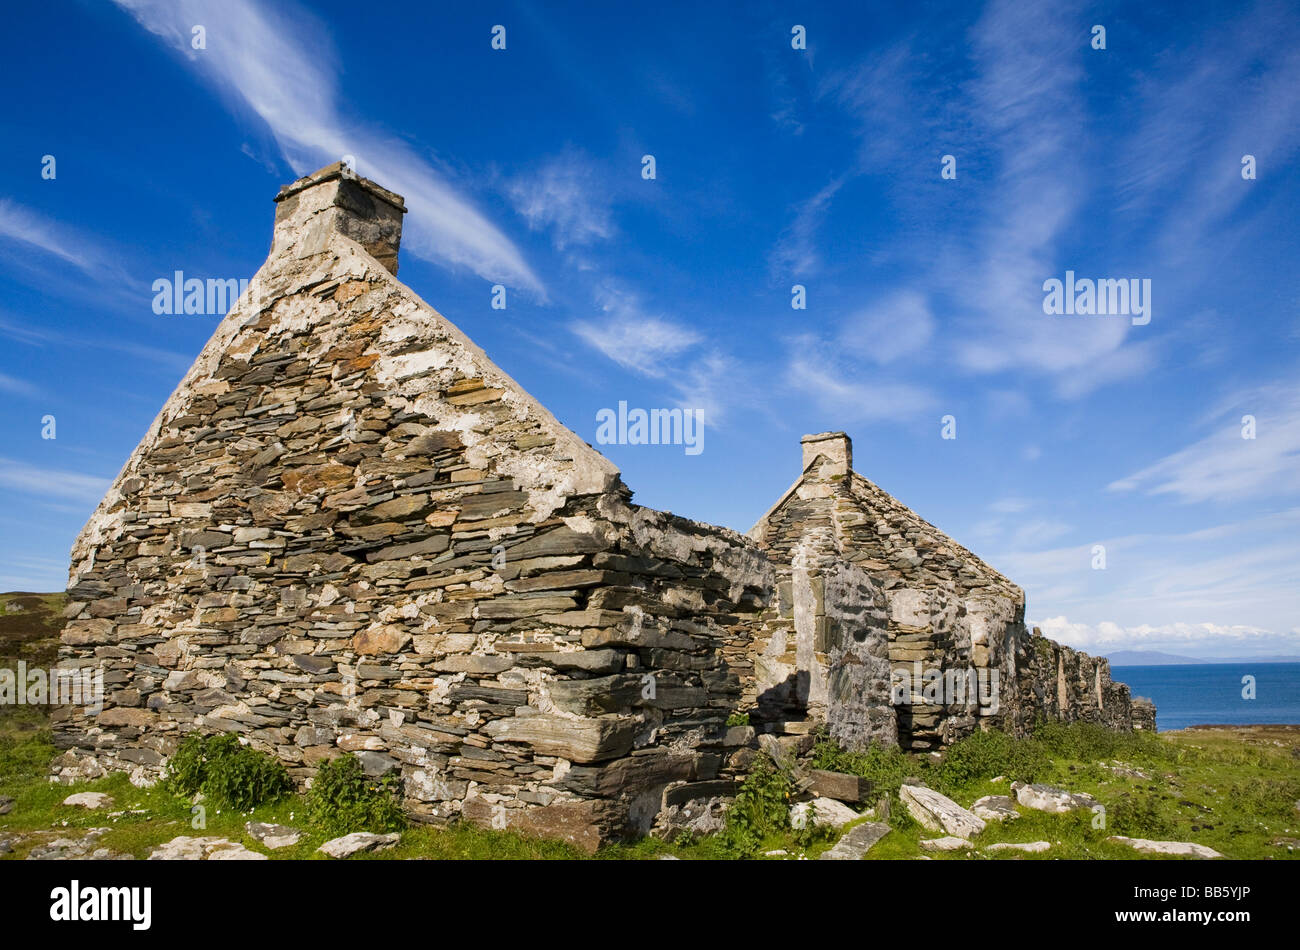 Le village abandonné ; Riasg Buidhe, Colonsay, l'île de Colonsay, Ecosse, Royaume-Uni Banque D'Images